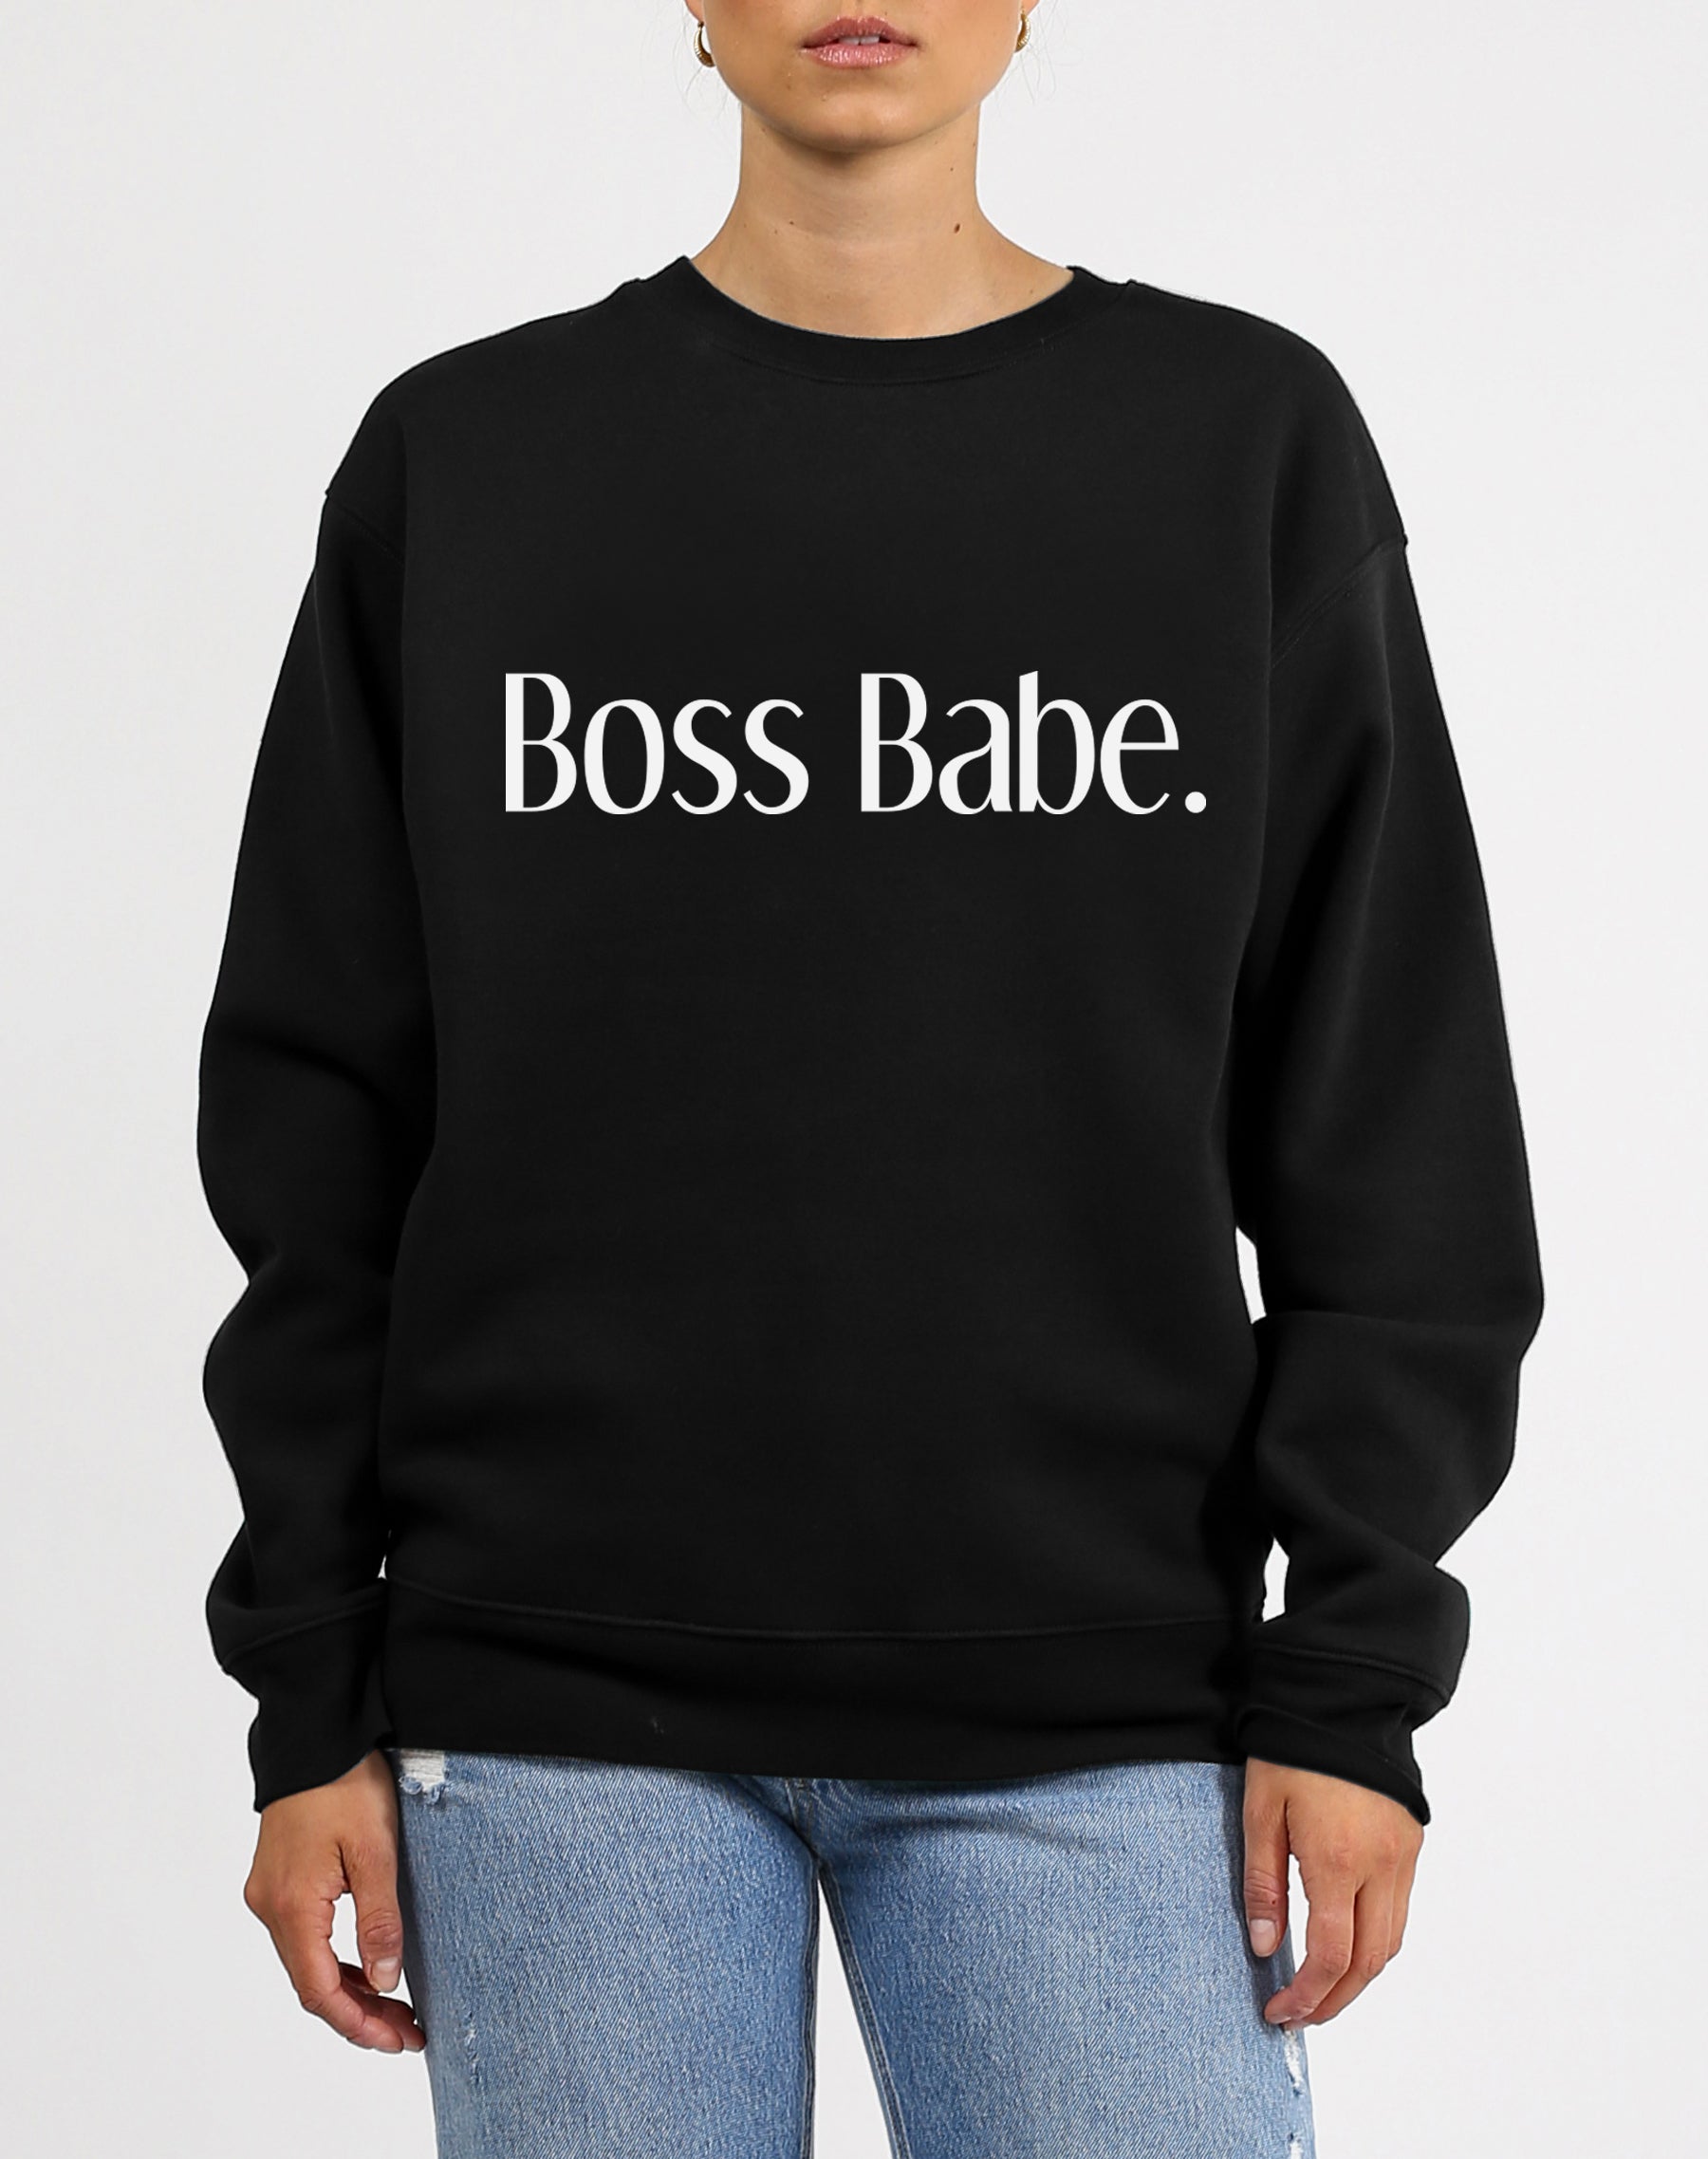 boss babe t shirt